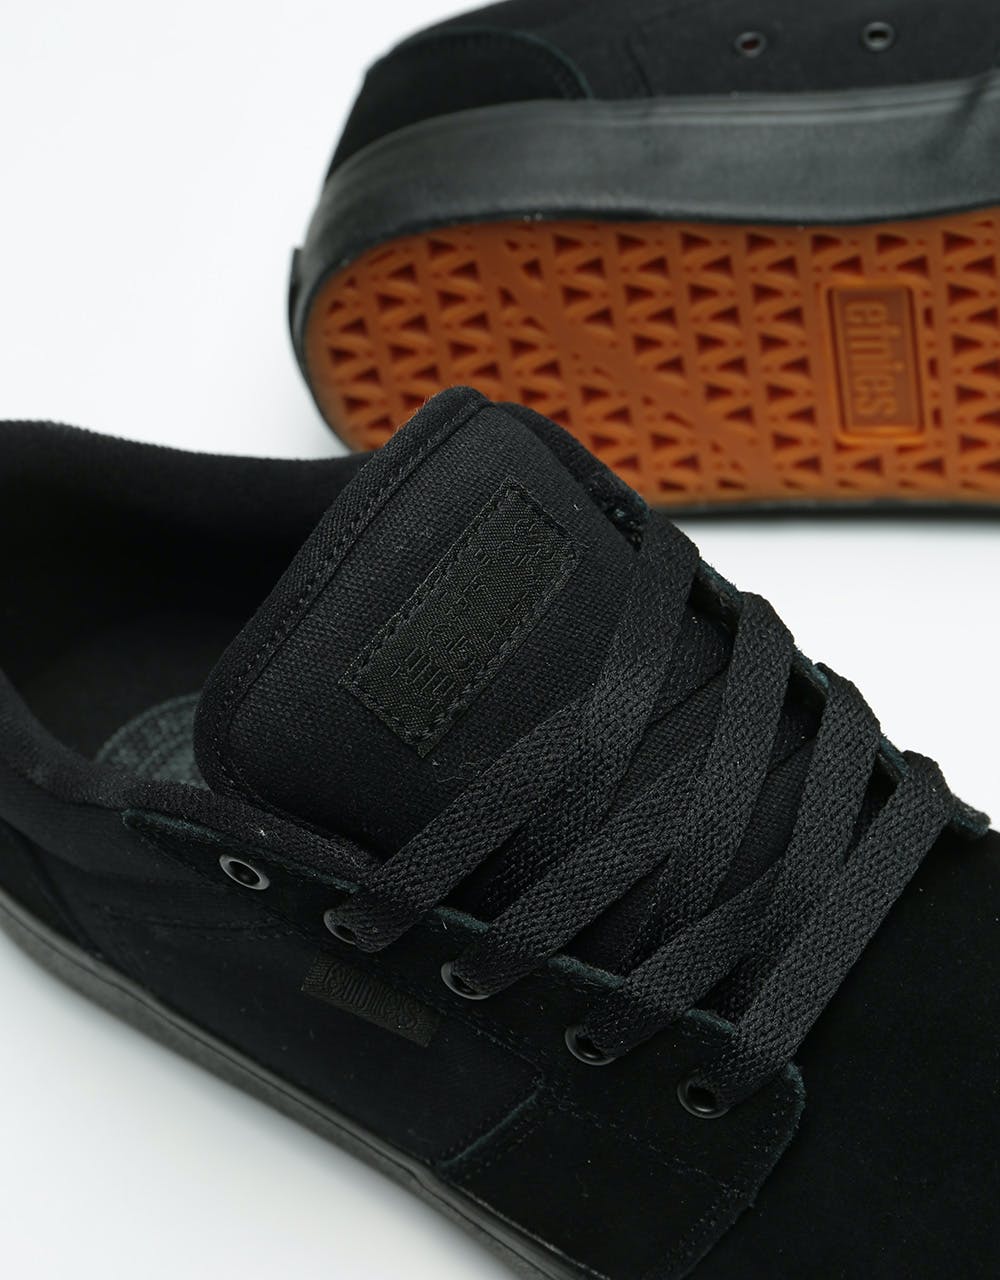 Etnies Barge LS Skate Shoes - Black/Black/Black